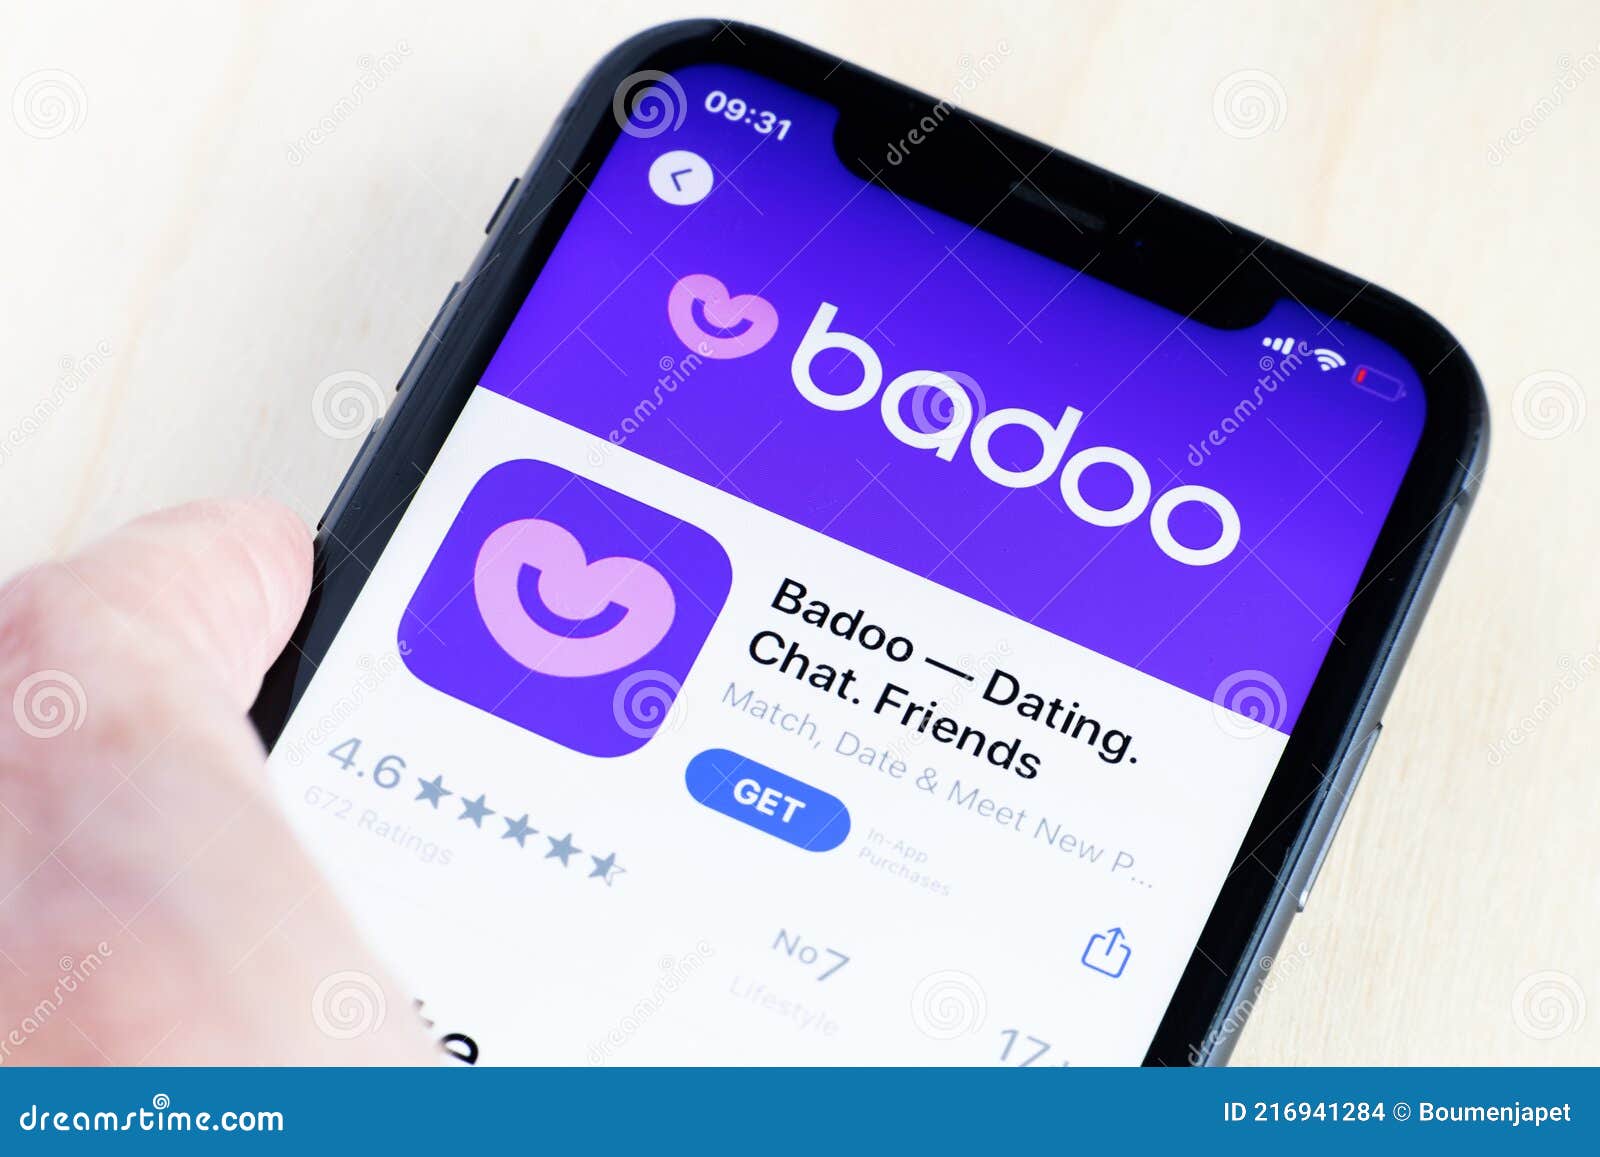 Badoo chat